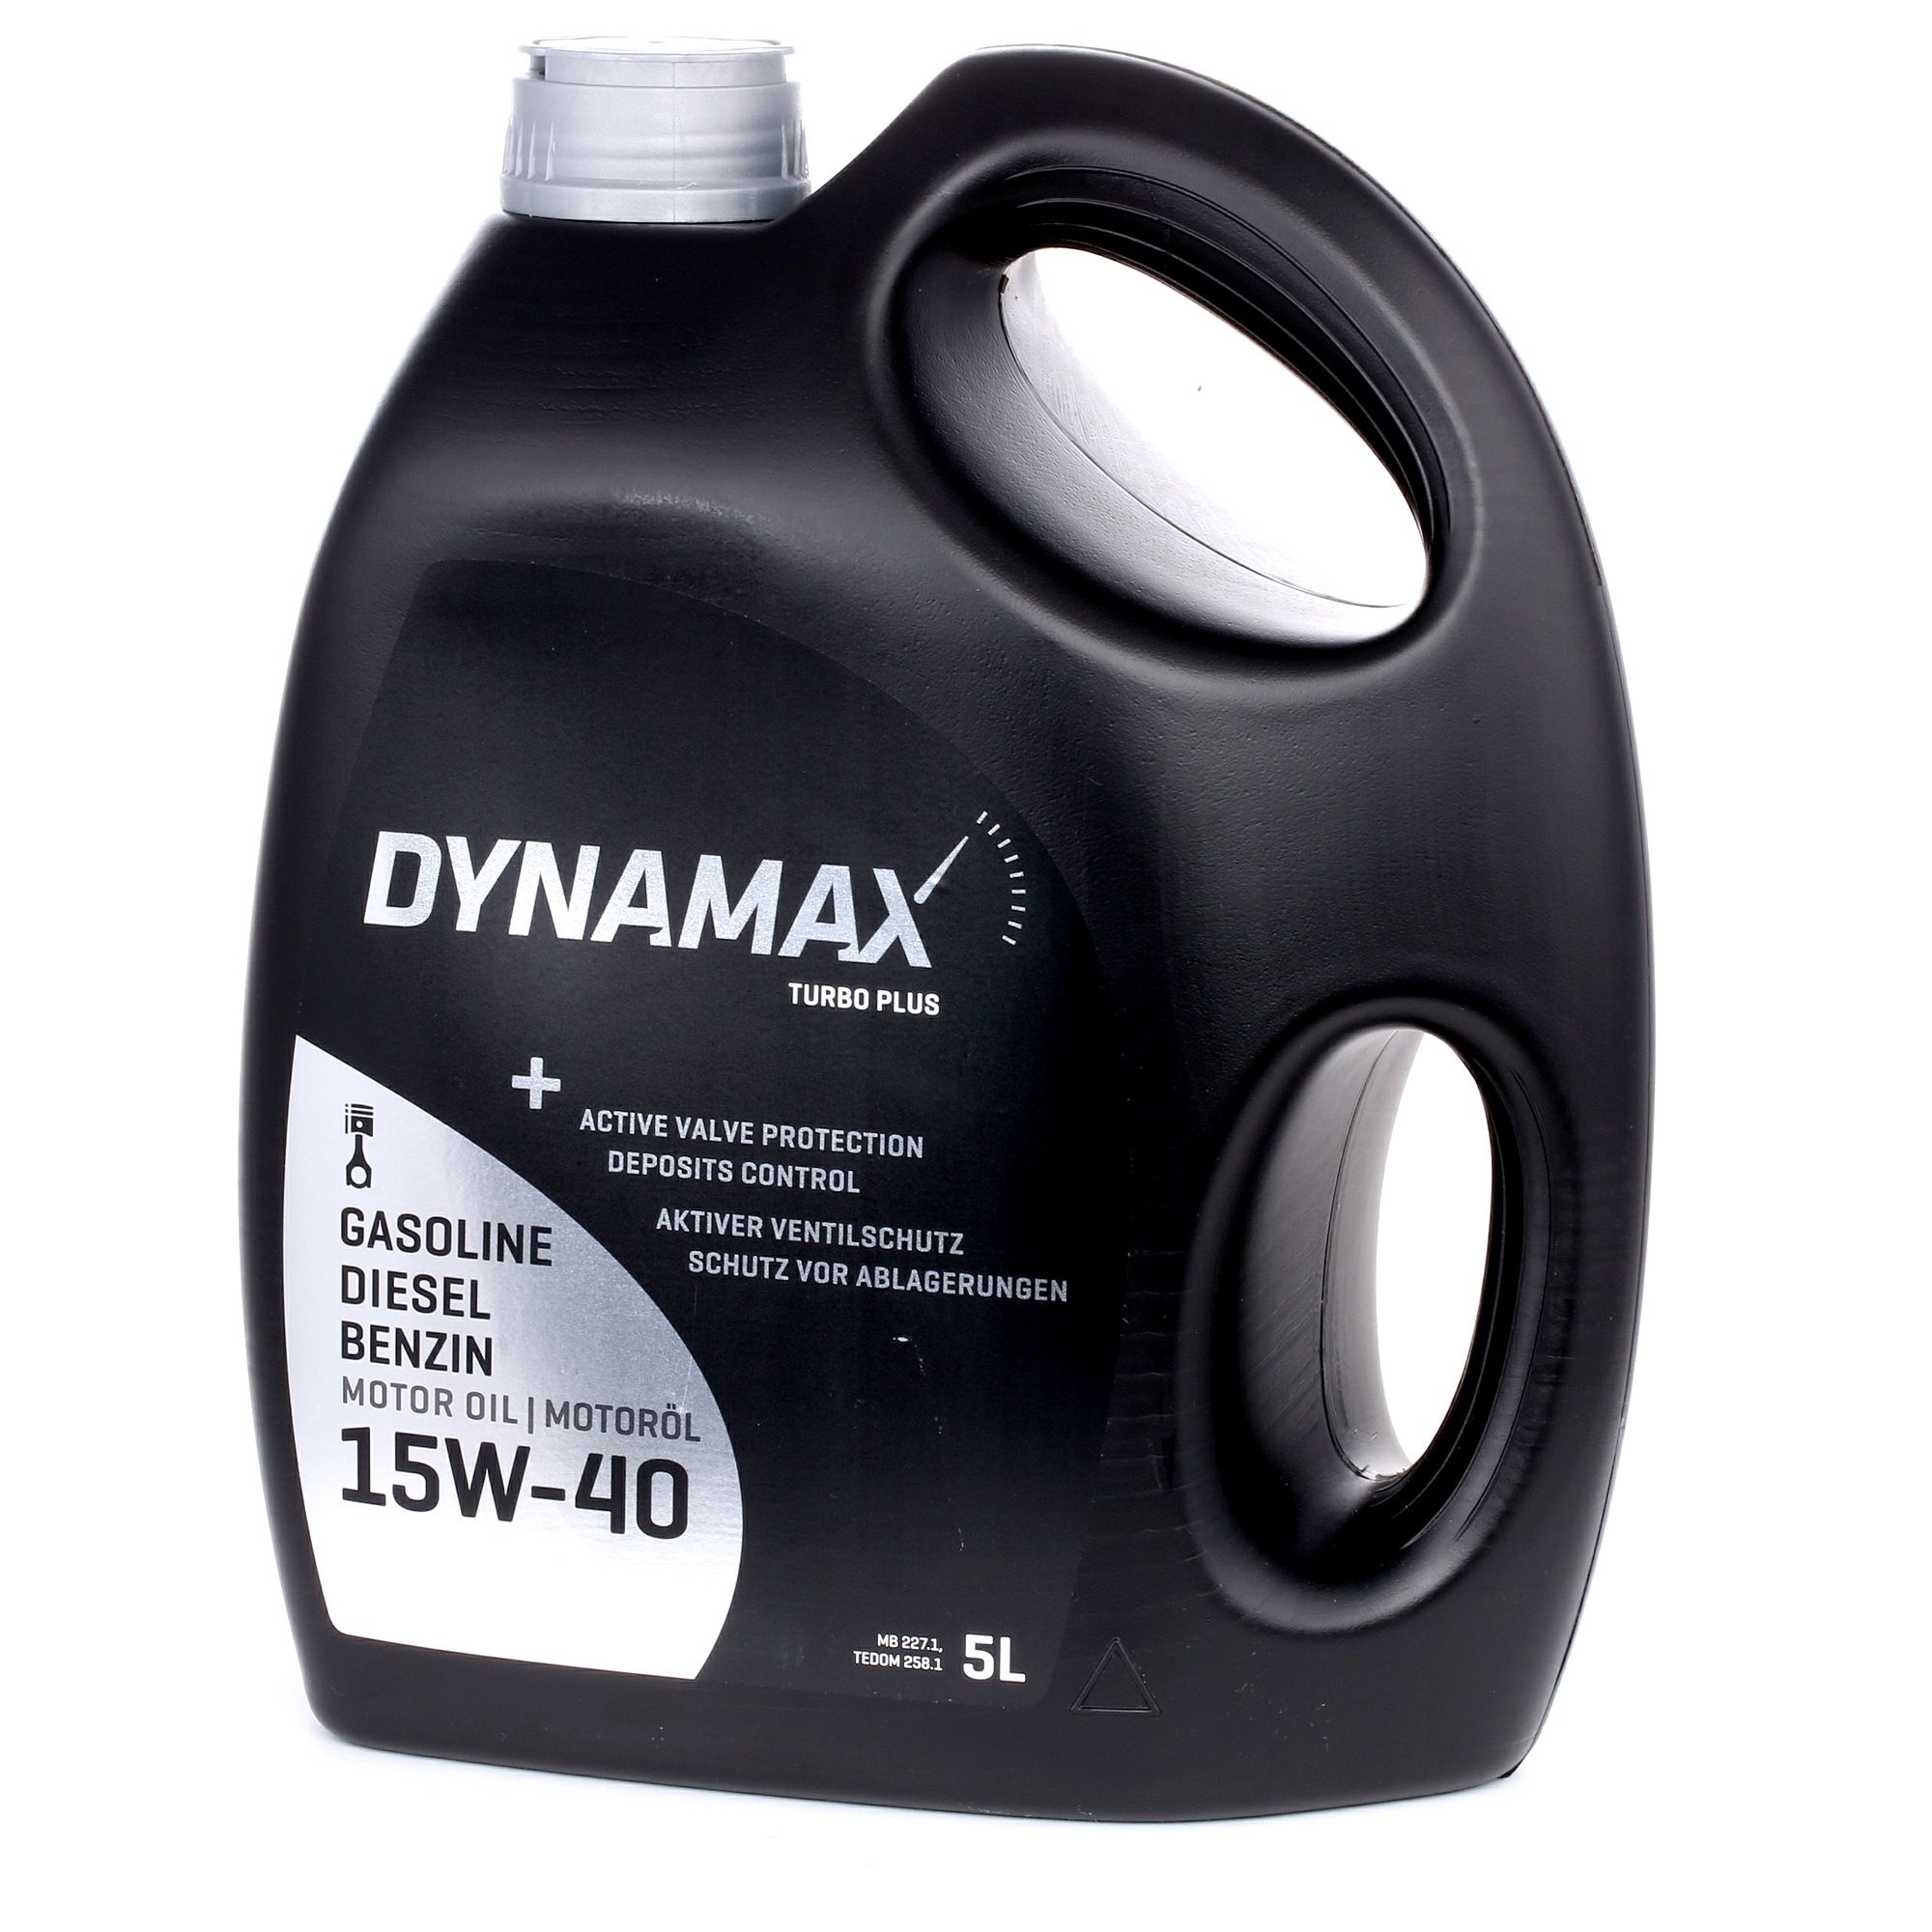 Car oil DYNAMAX 15W-40, 5l, Mineral Oil longlife 502154